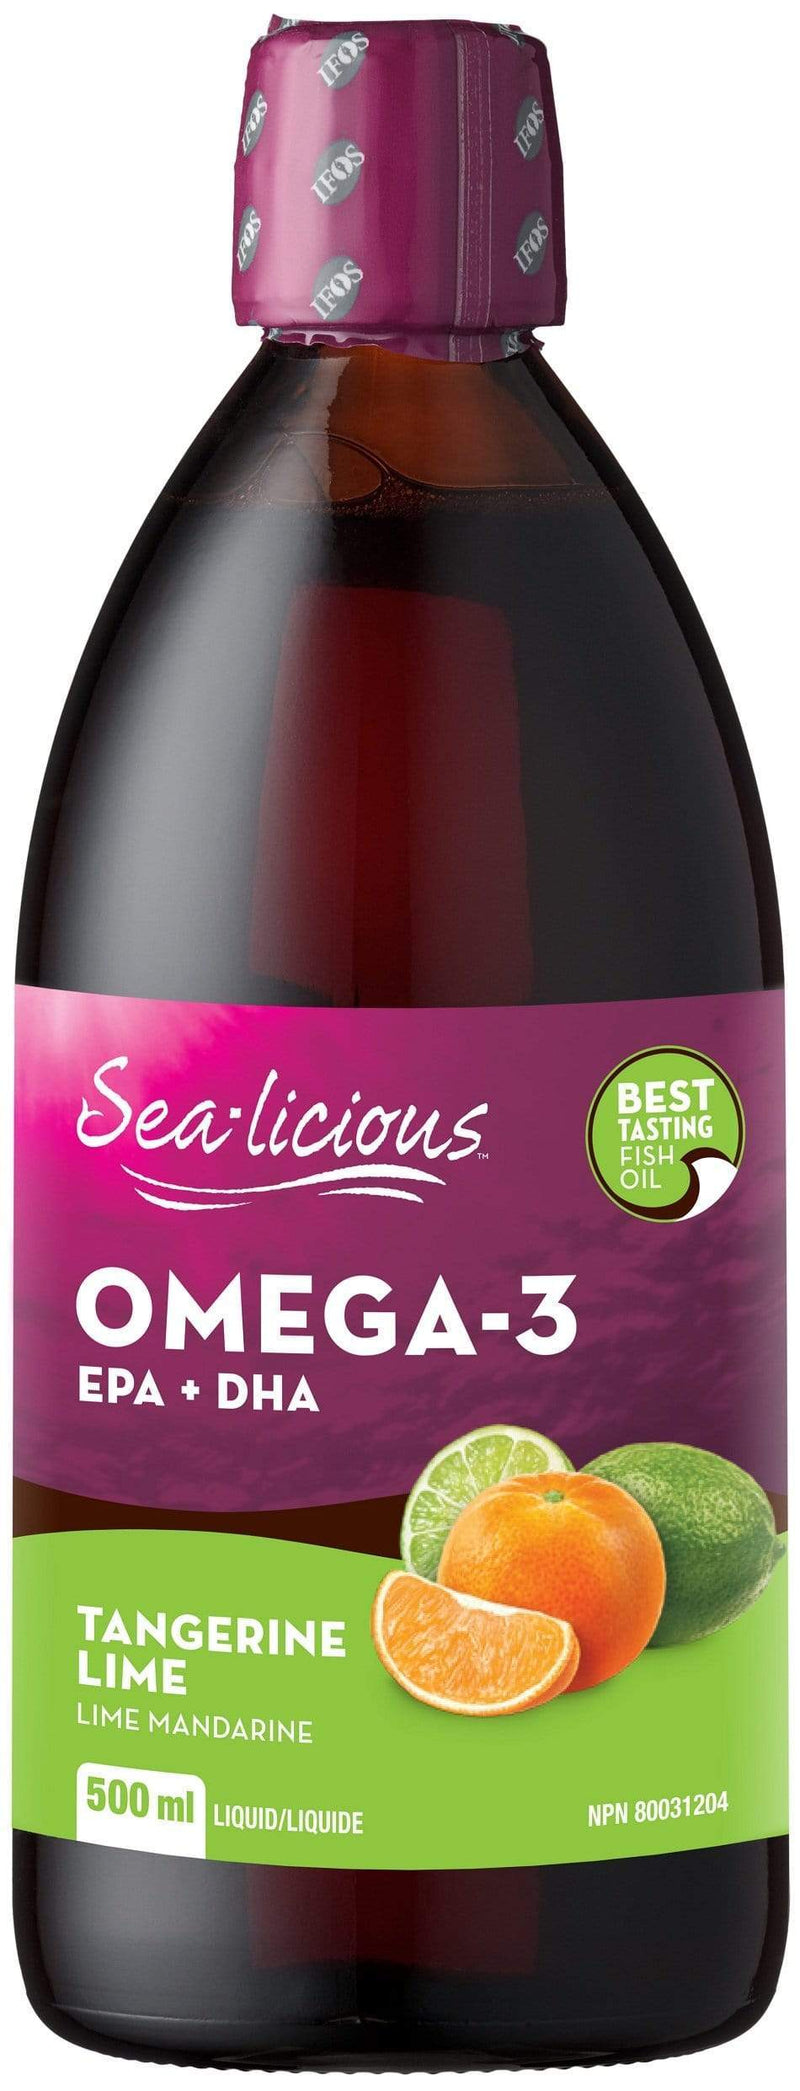 أوميغا 3 المنعشة بالبحر من كارلين مع EPA + DHA - ليمون اليوسفي